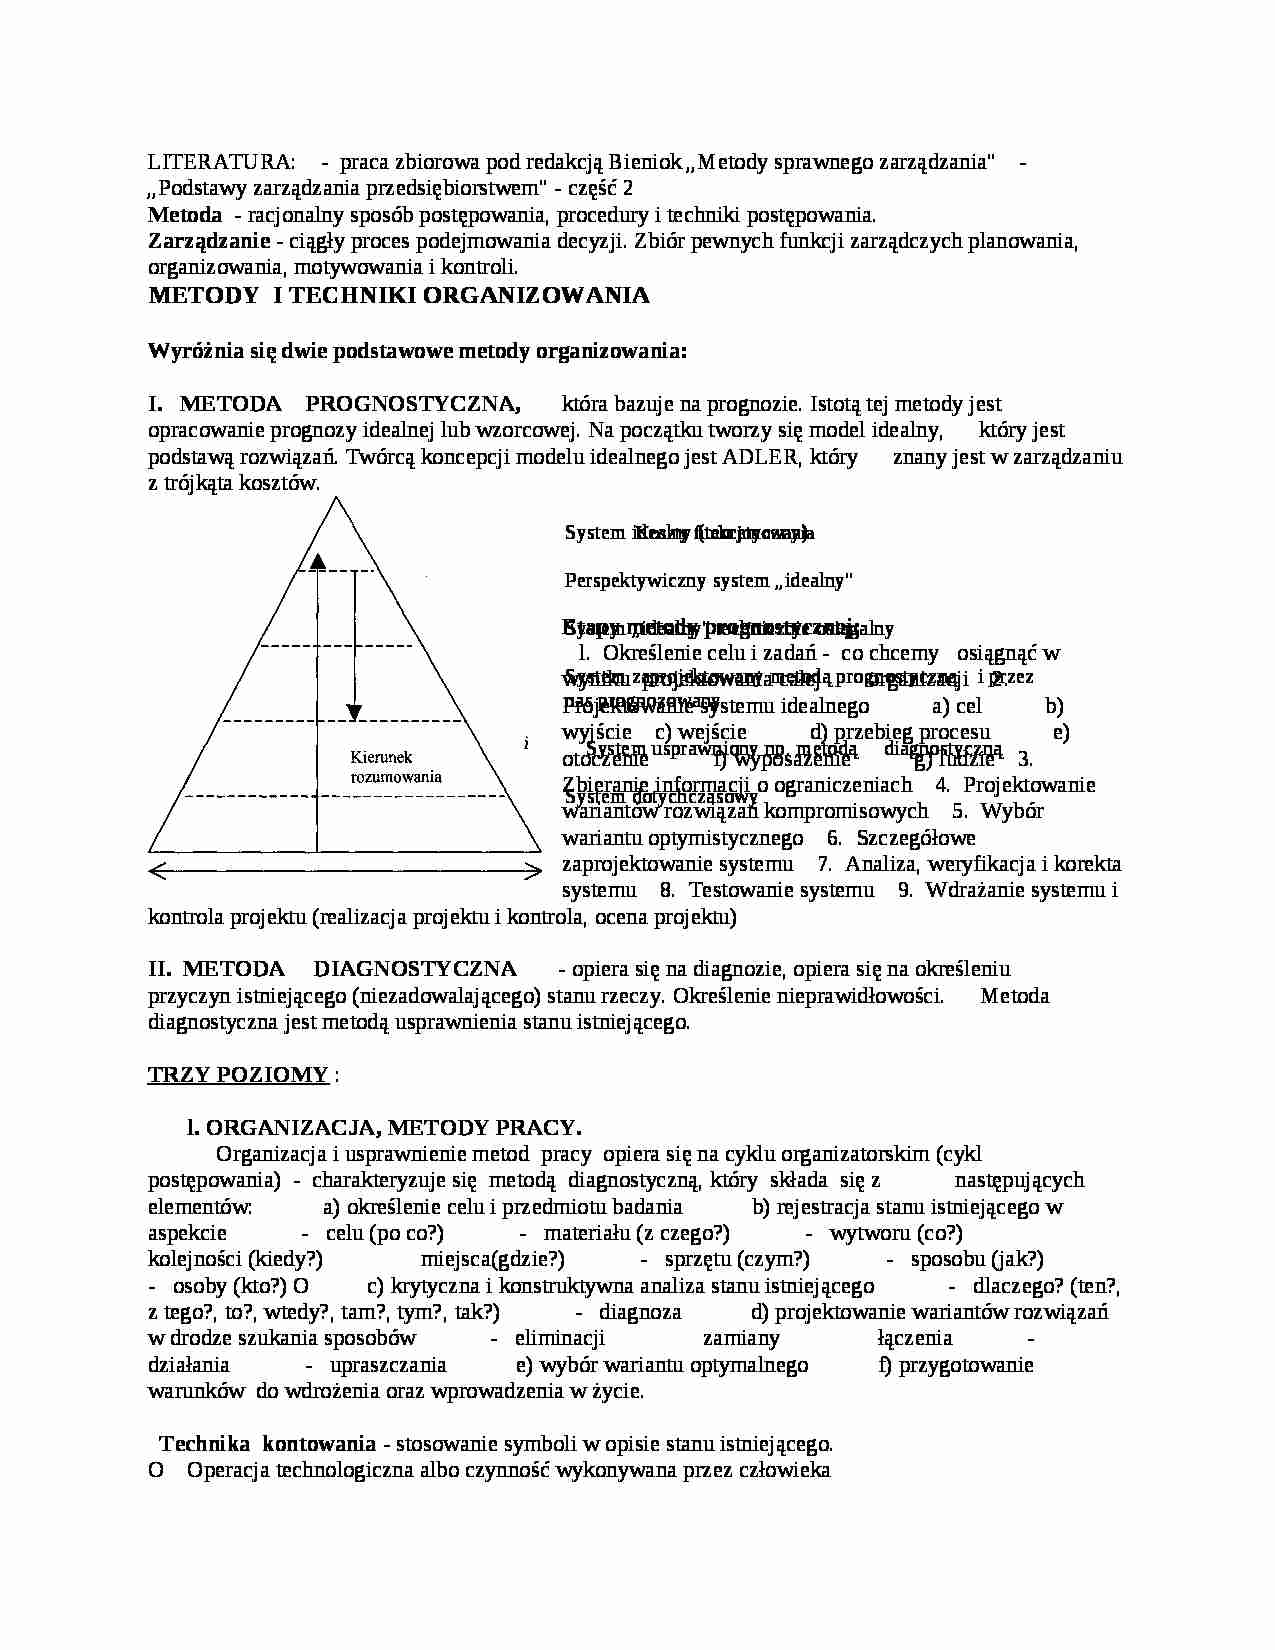 Metody i techniki organizowania - strona 1